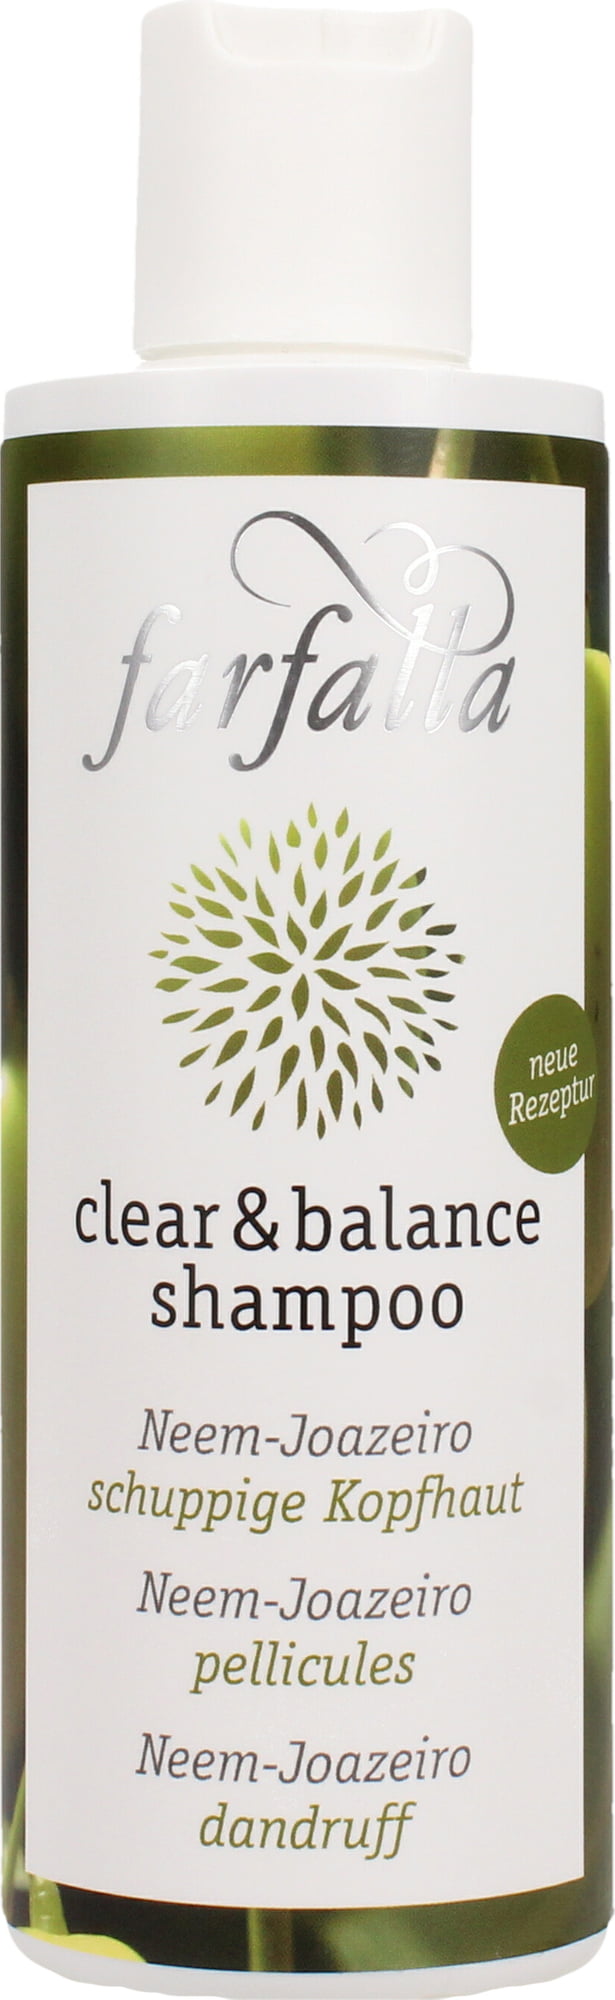 Farfalla clear & balance Neem & Joazeiro Shampoo